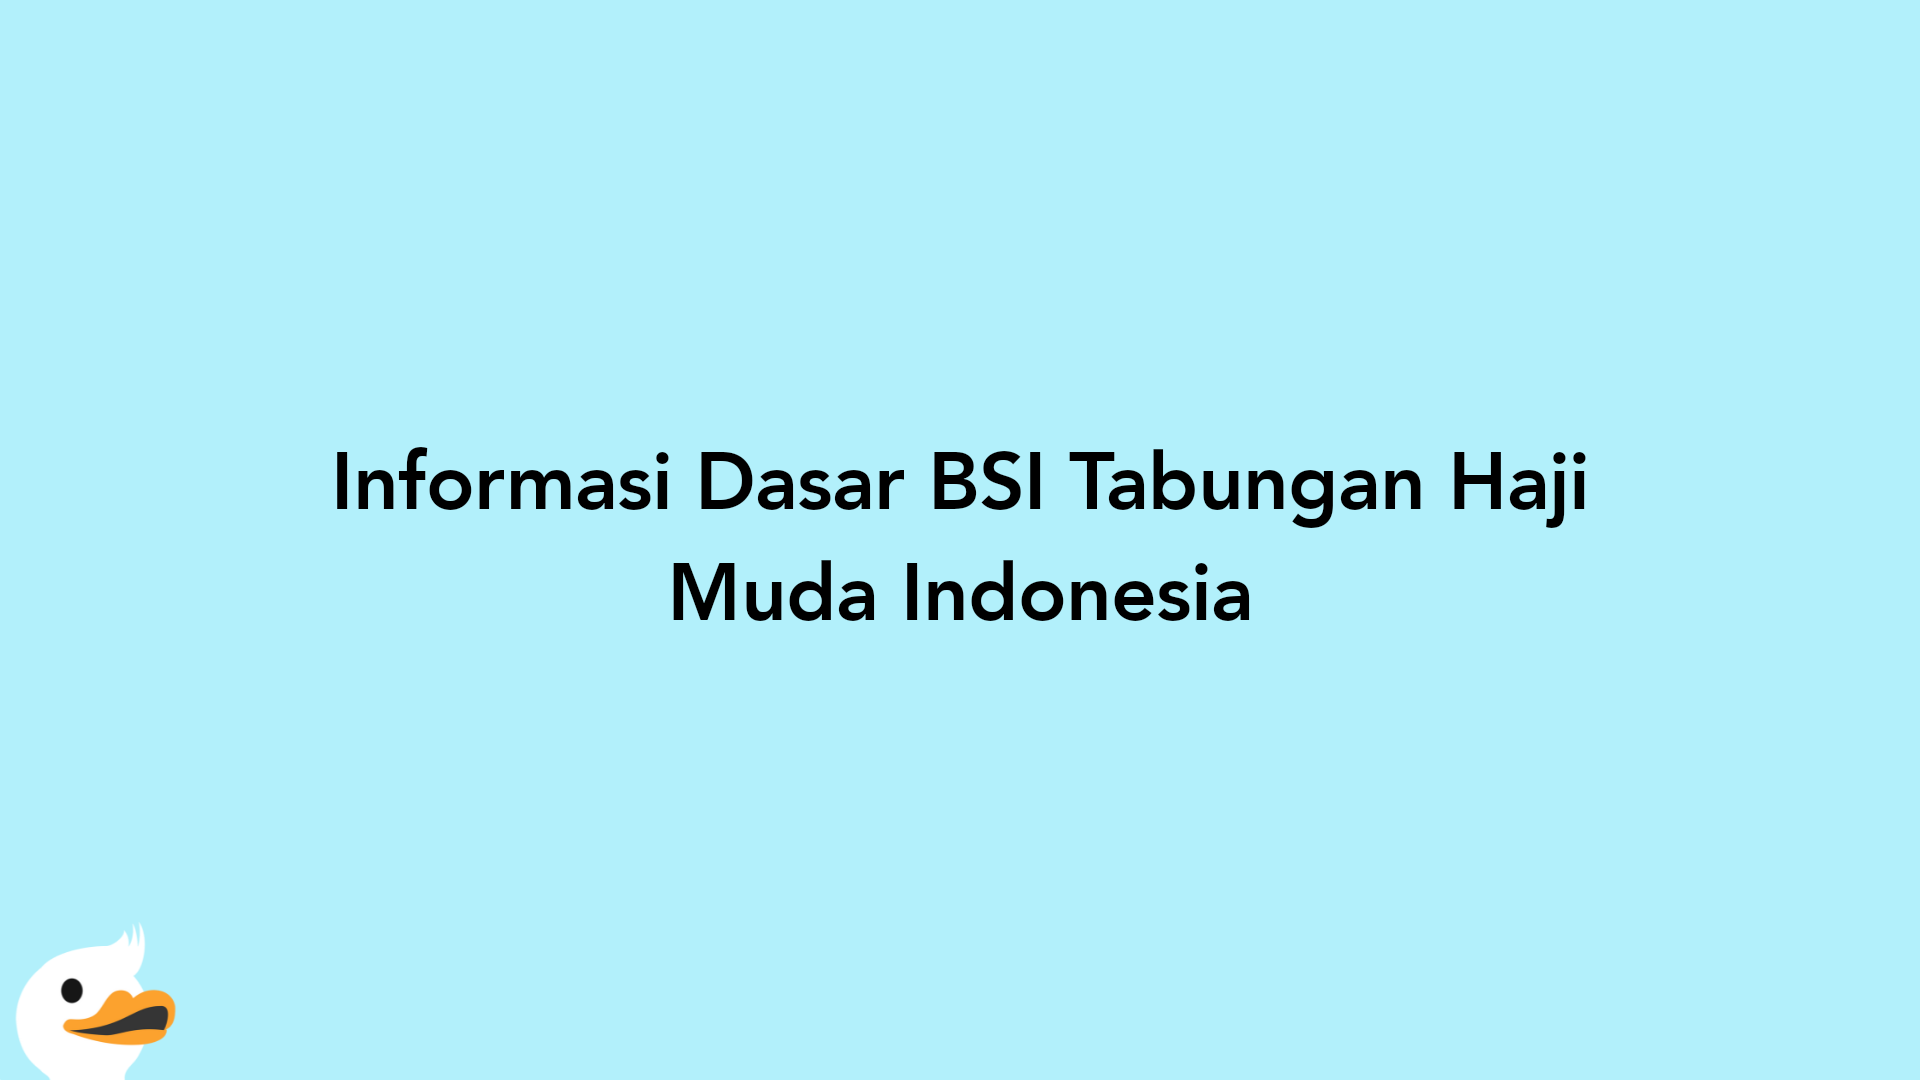 Informasi Dasar BSI Tabungan Haji Muda Indonesia